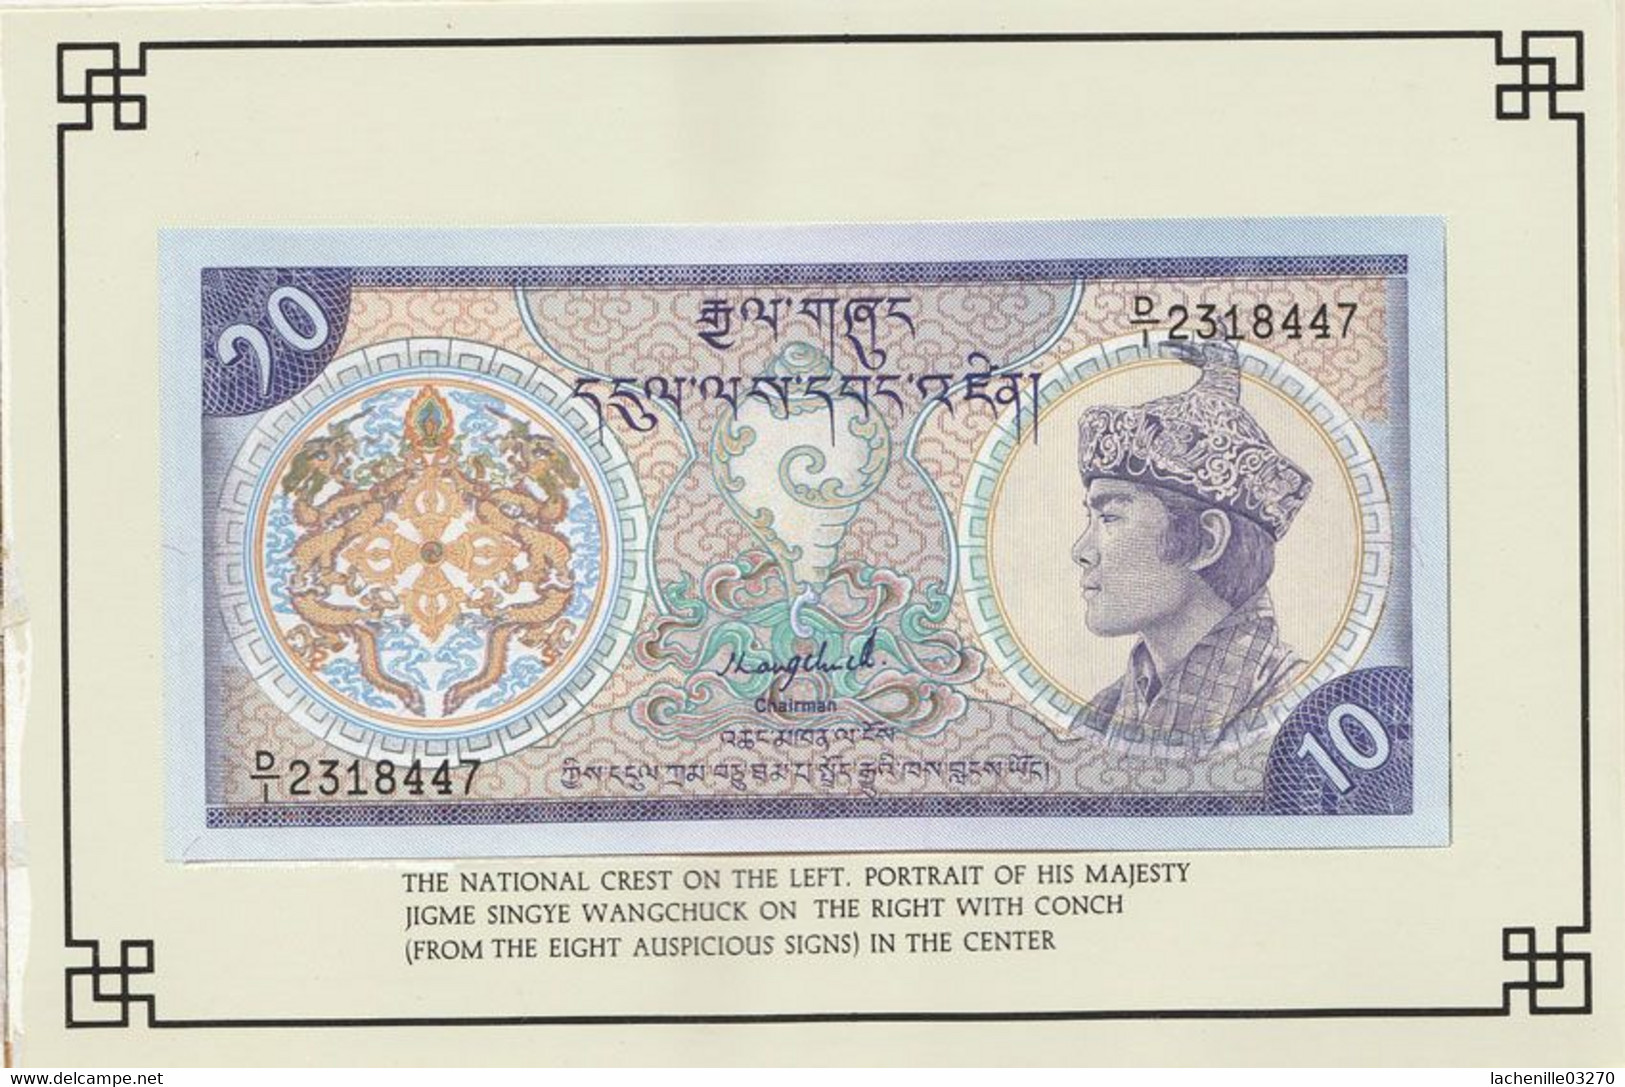 Bhoutan - 5 billets de banque neufs en circulation en 1991 sous forme de livret